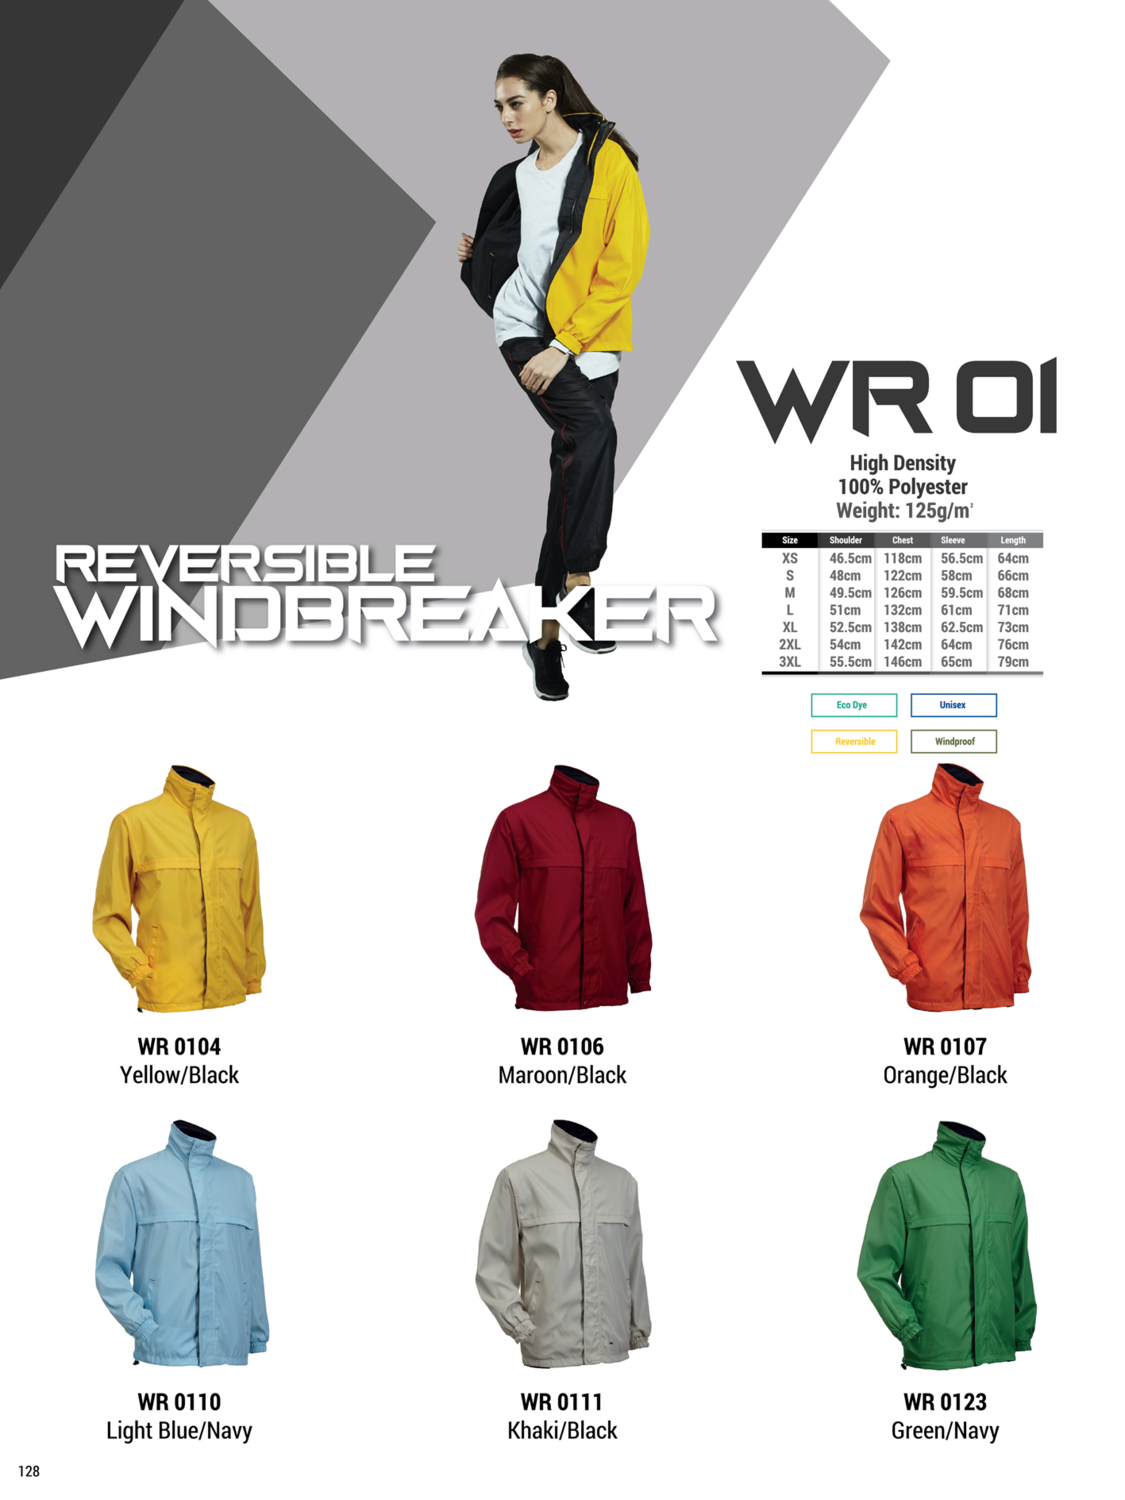 WR01 Windbreaker